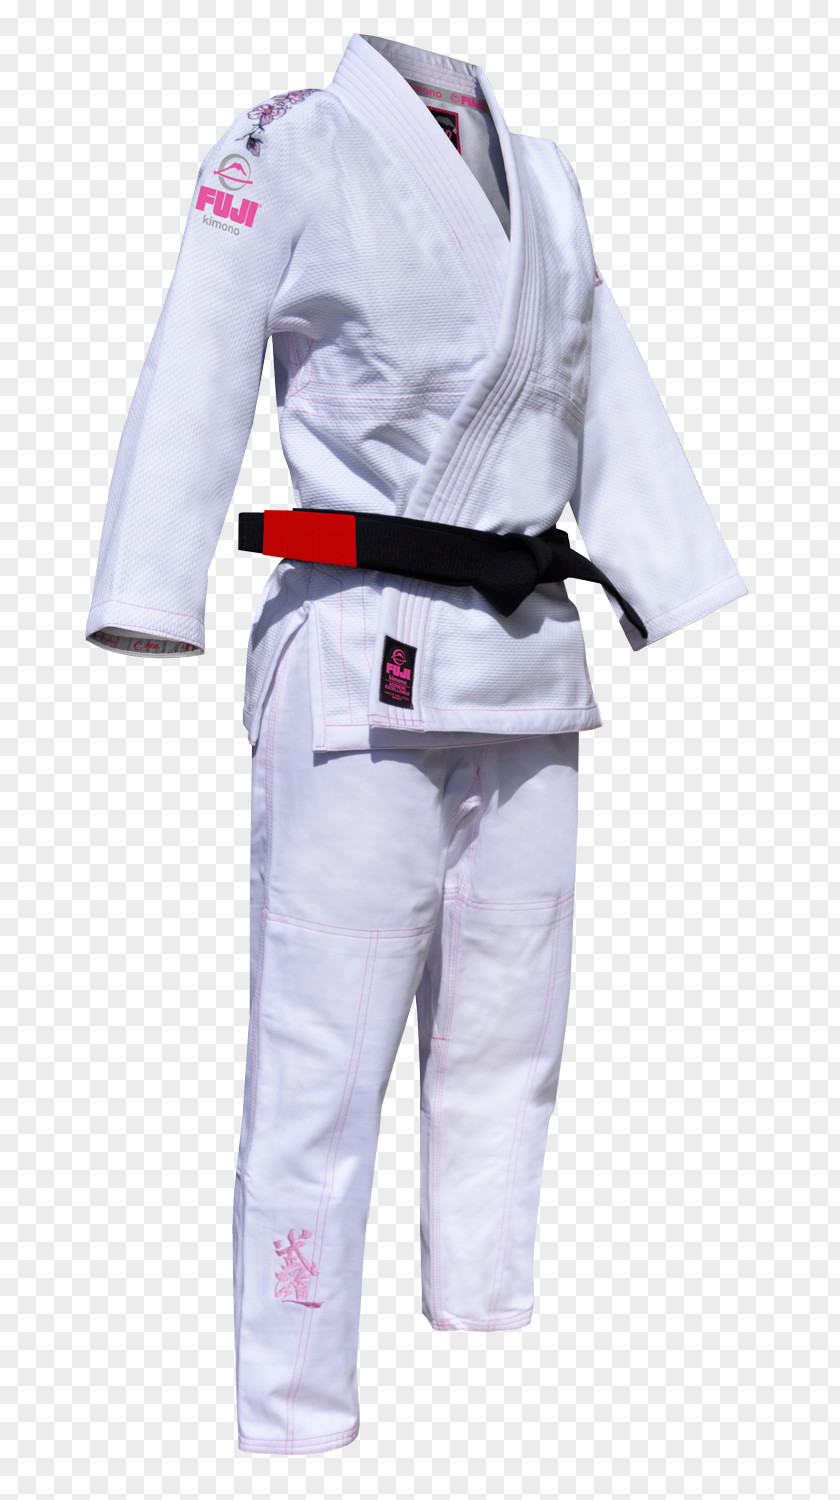 Fuji Brazilian Jiu-jitsu Gi Karate Jujutsu Dobok PNG